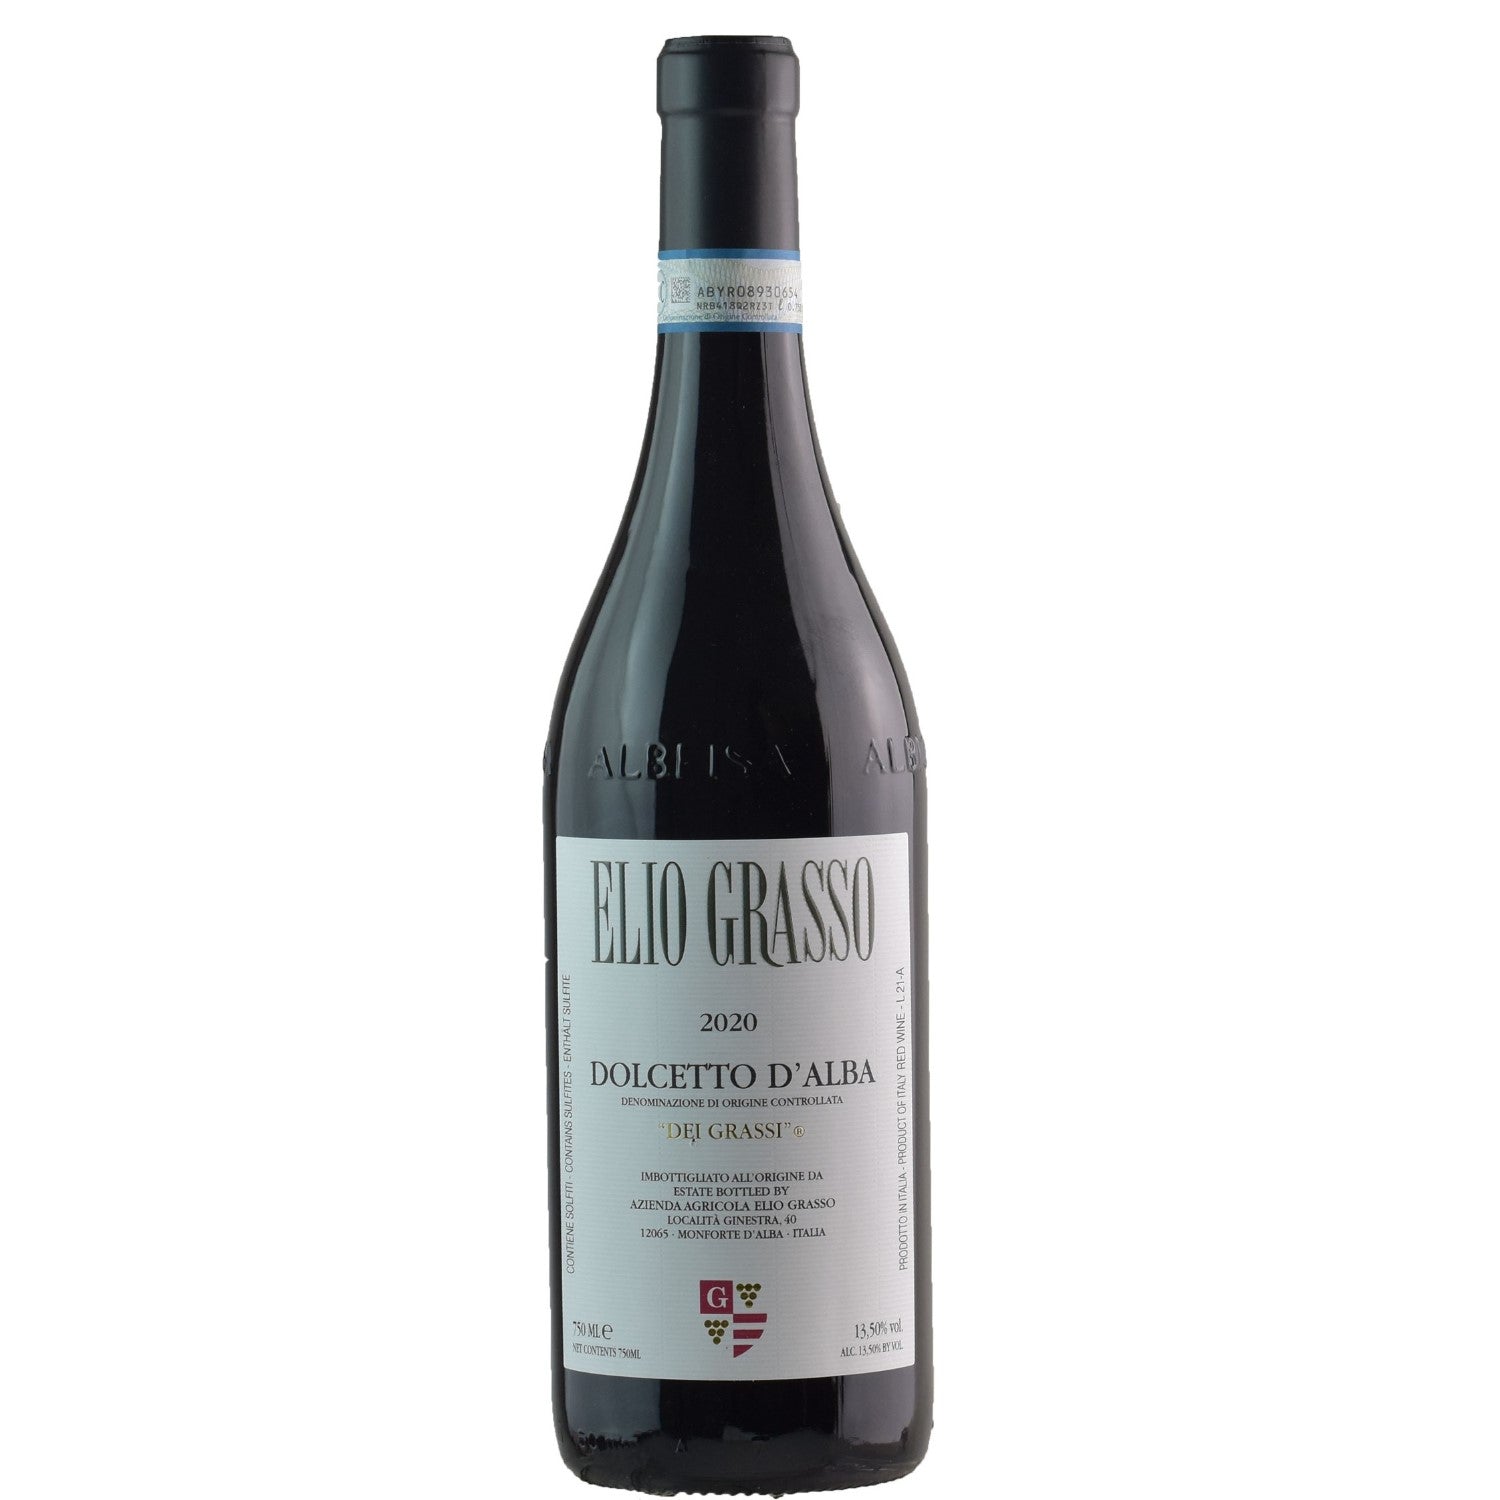 Elio Grasso dei Grassi Dolcetto d'Alba Rotwein Wein trocken DOC Italien (12 x 0.75l) - Versanel -